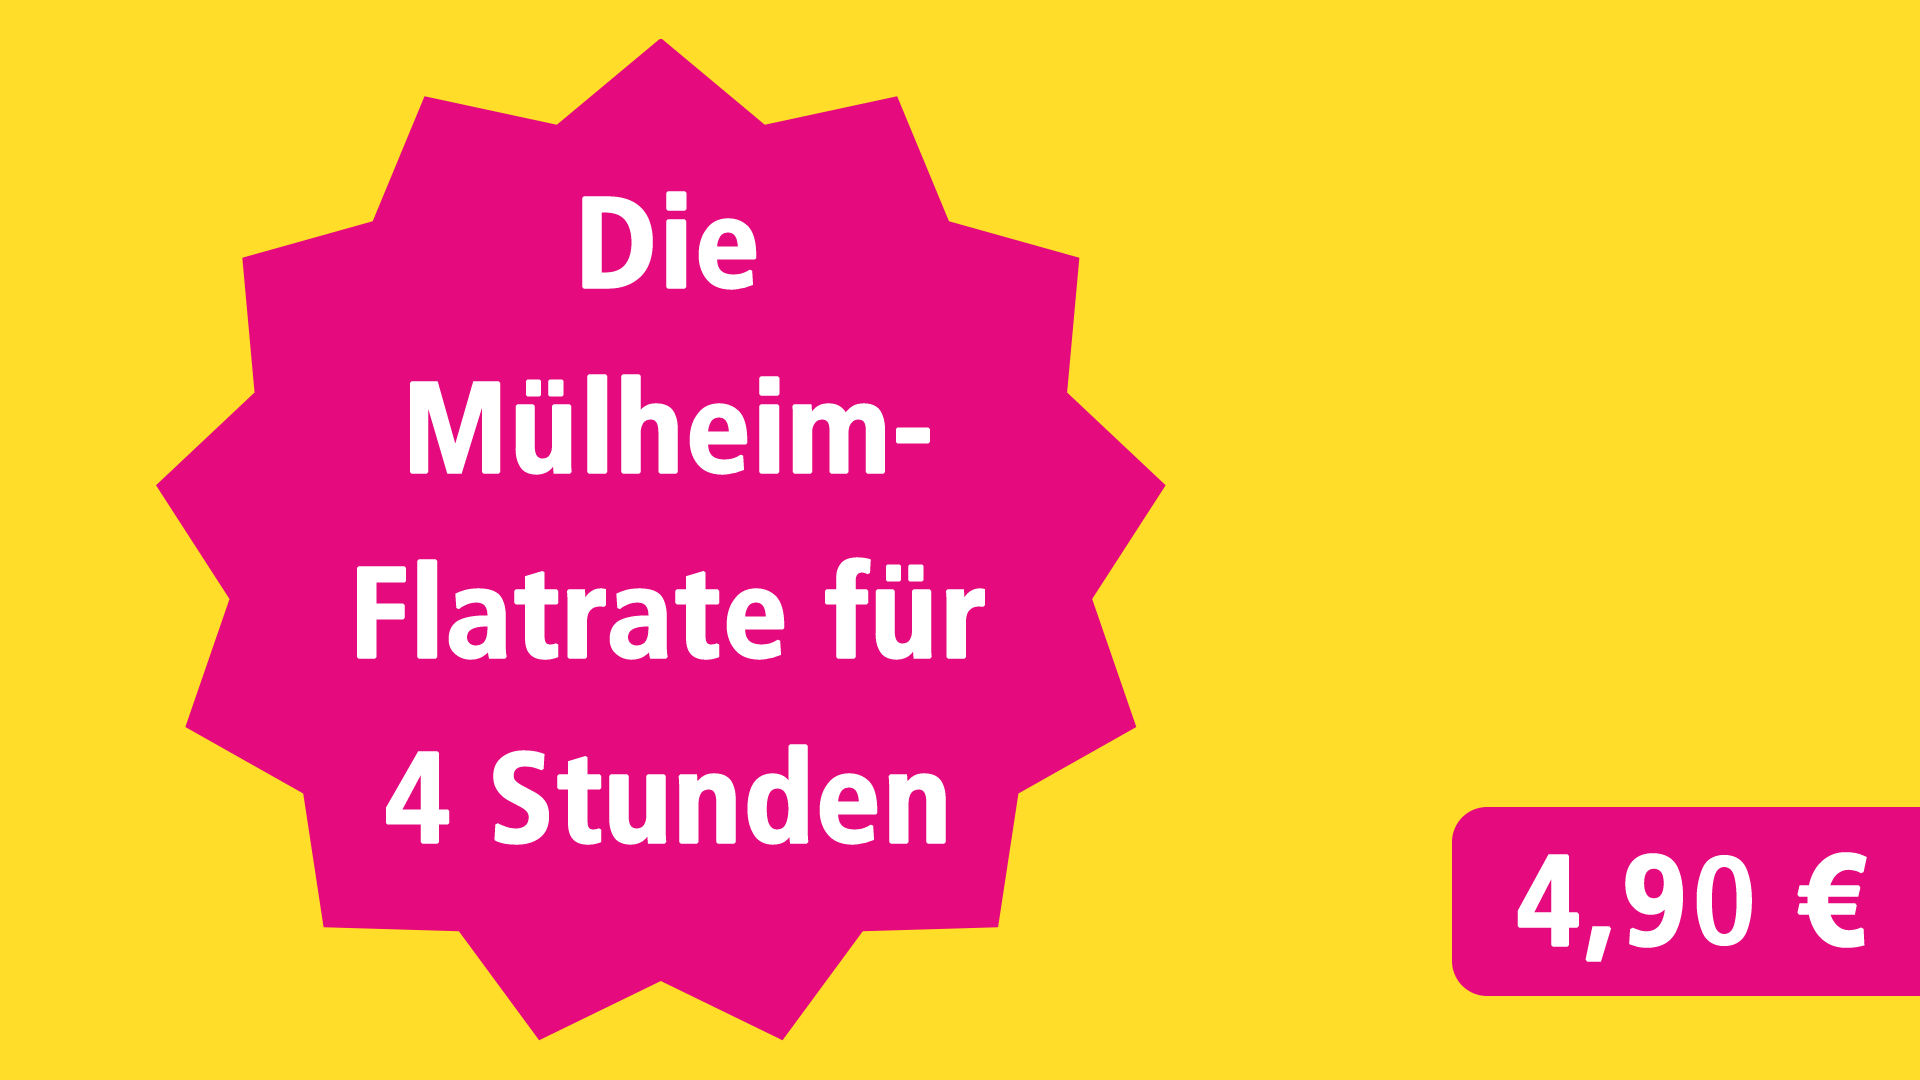 Die Mülheim-Flatrate für 4 Stunden für 4,90 €